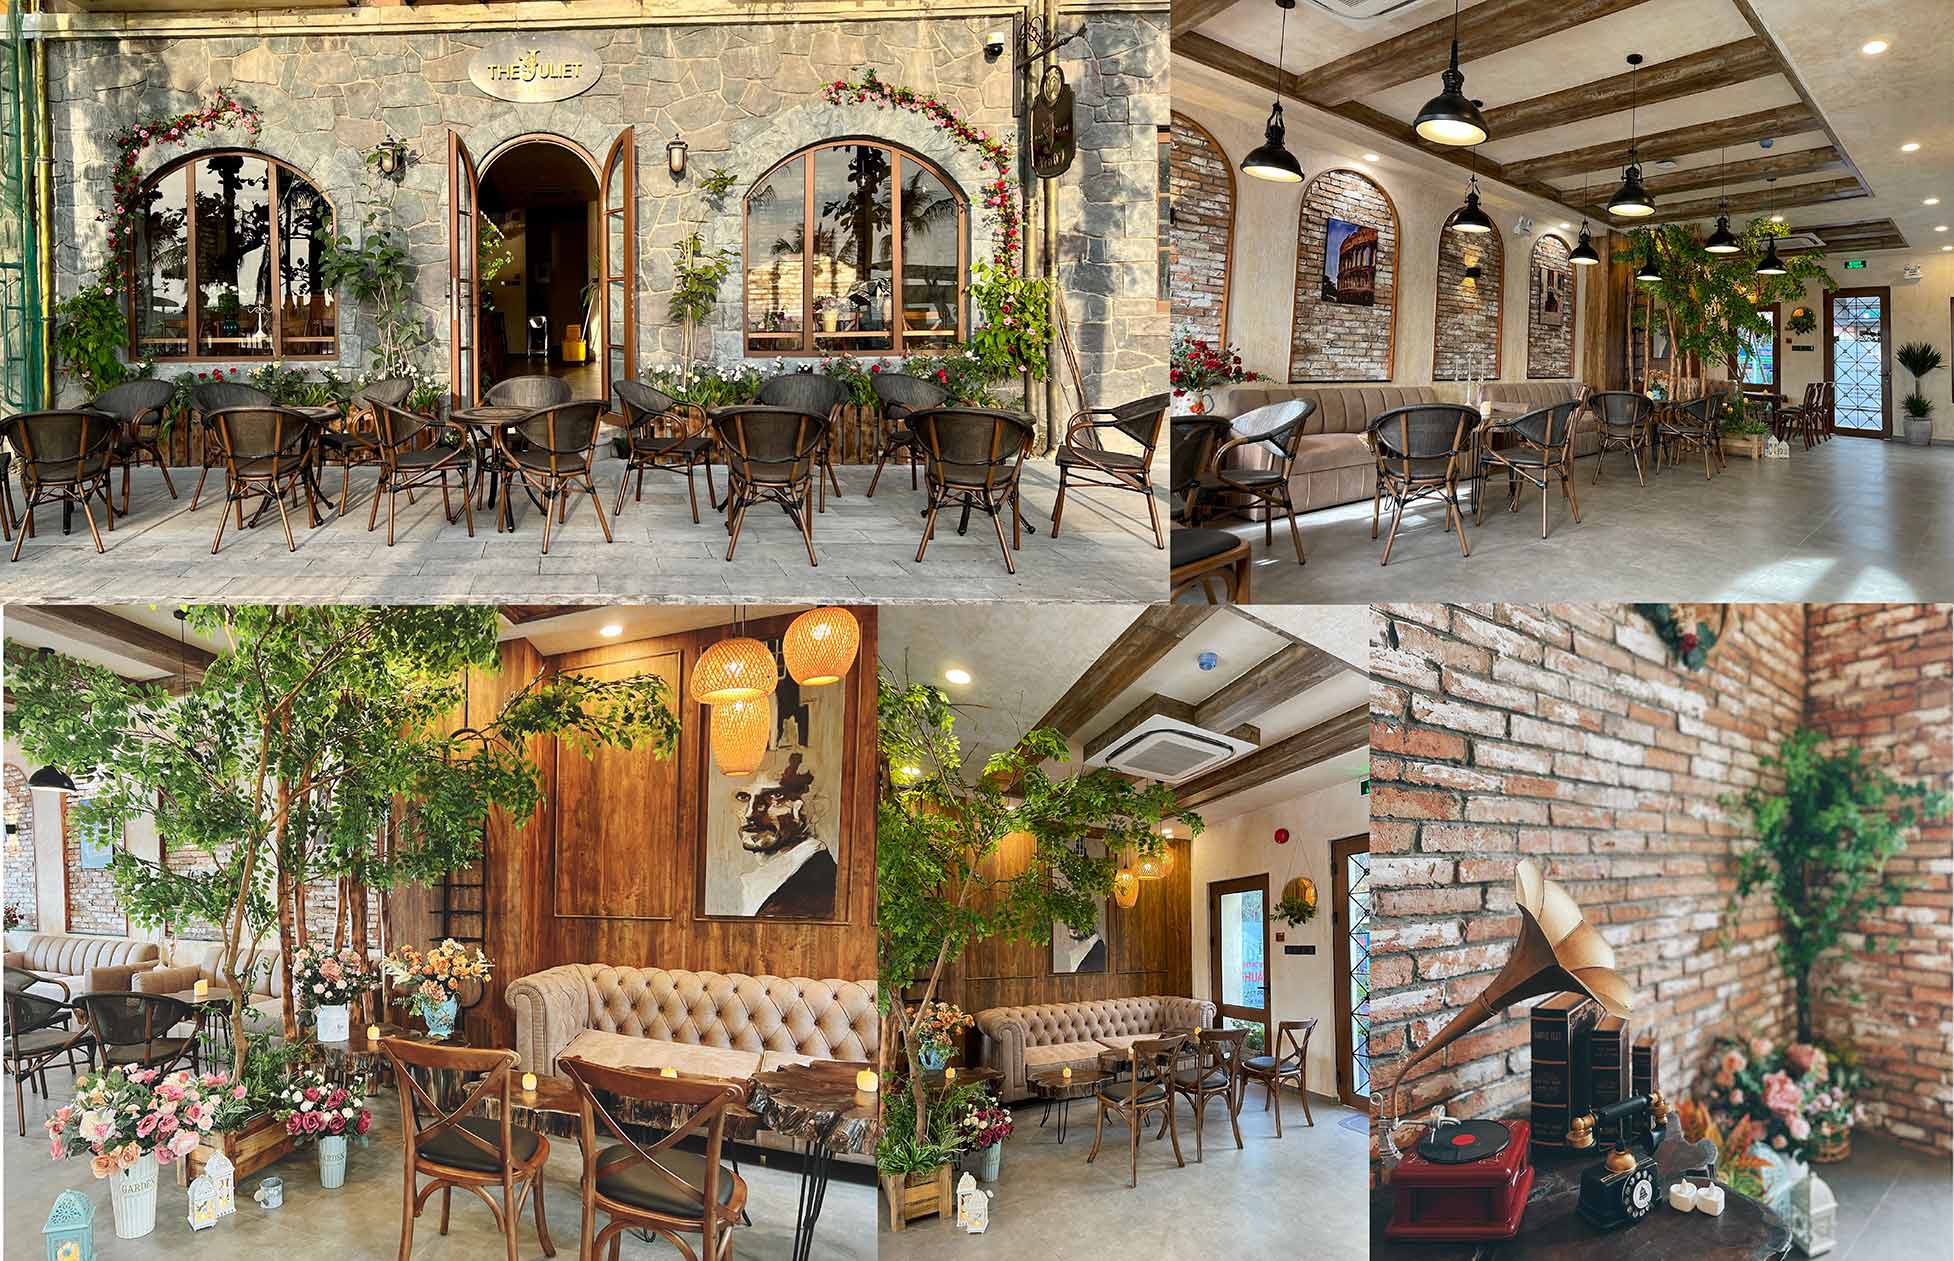 Khu vực vỉa hè và tầng trệt của khách sạn Juliet được thiết kế quán cafe mang đến trải nghiệm trọn vẹn cho du khách